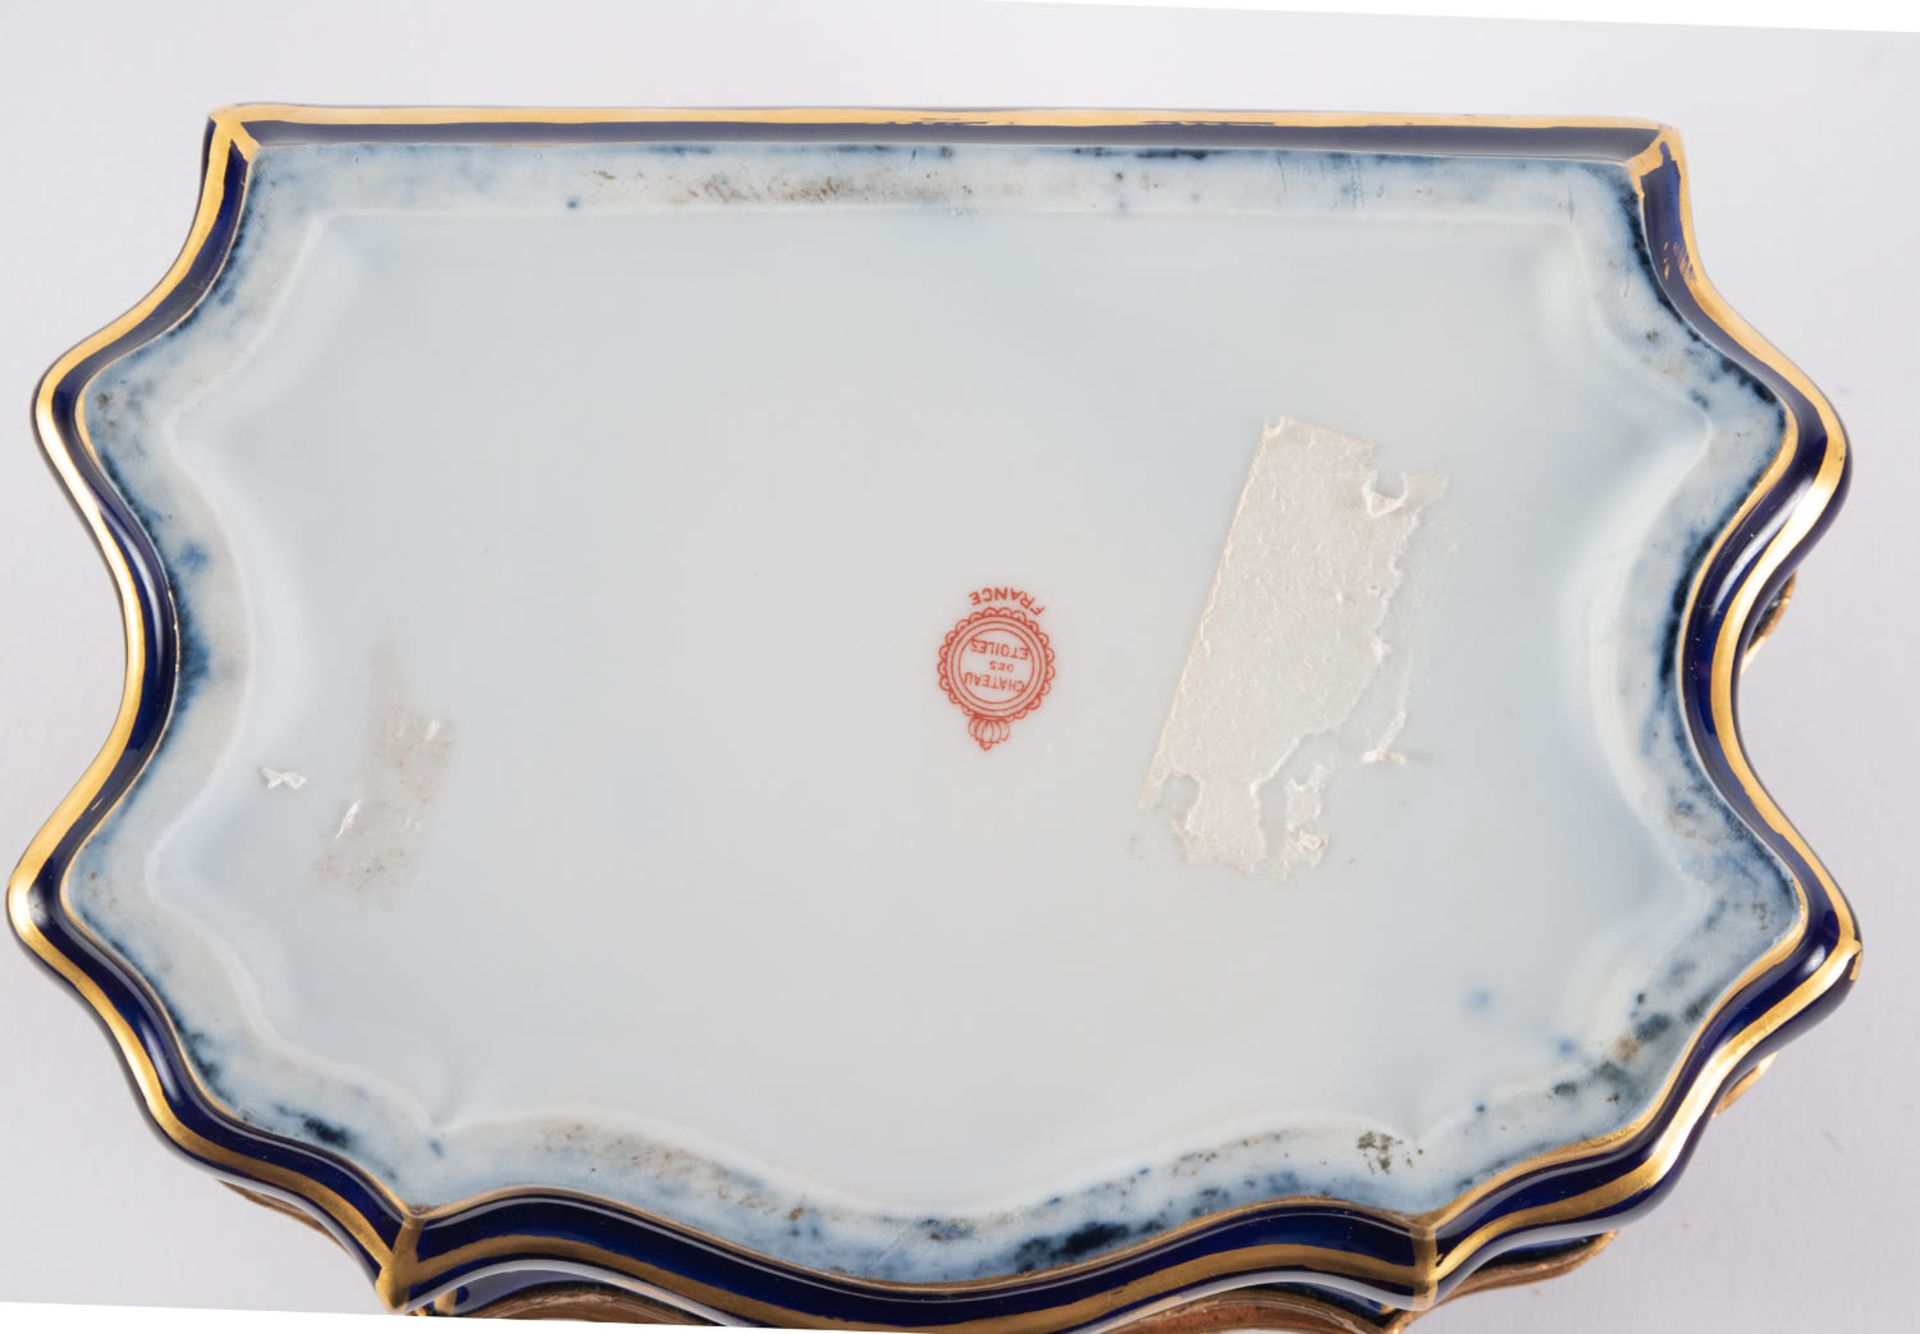 Enamelled Sèvres porcelain jewelry box, 19th century, Chateau de les Etoiles series - Image 6 of 6